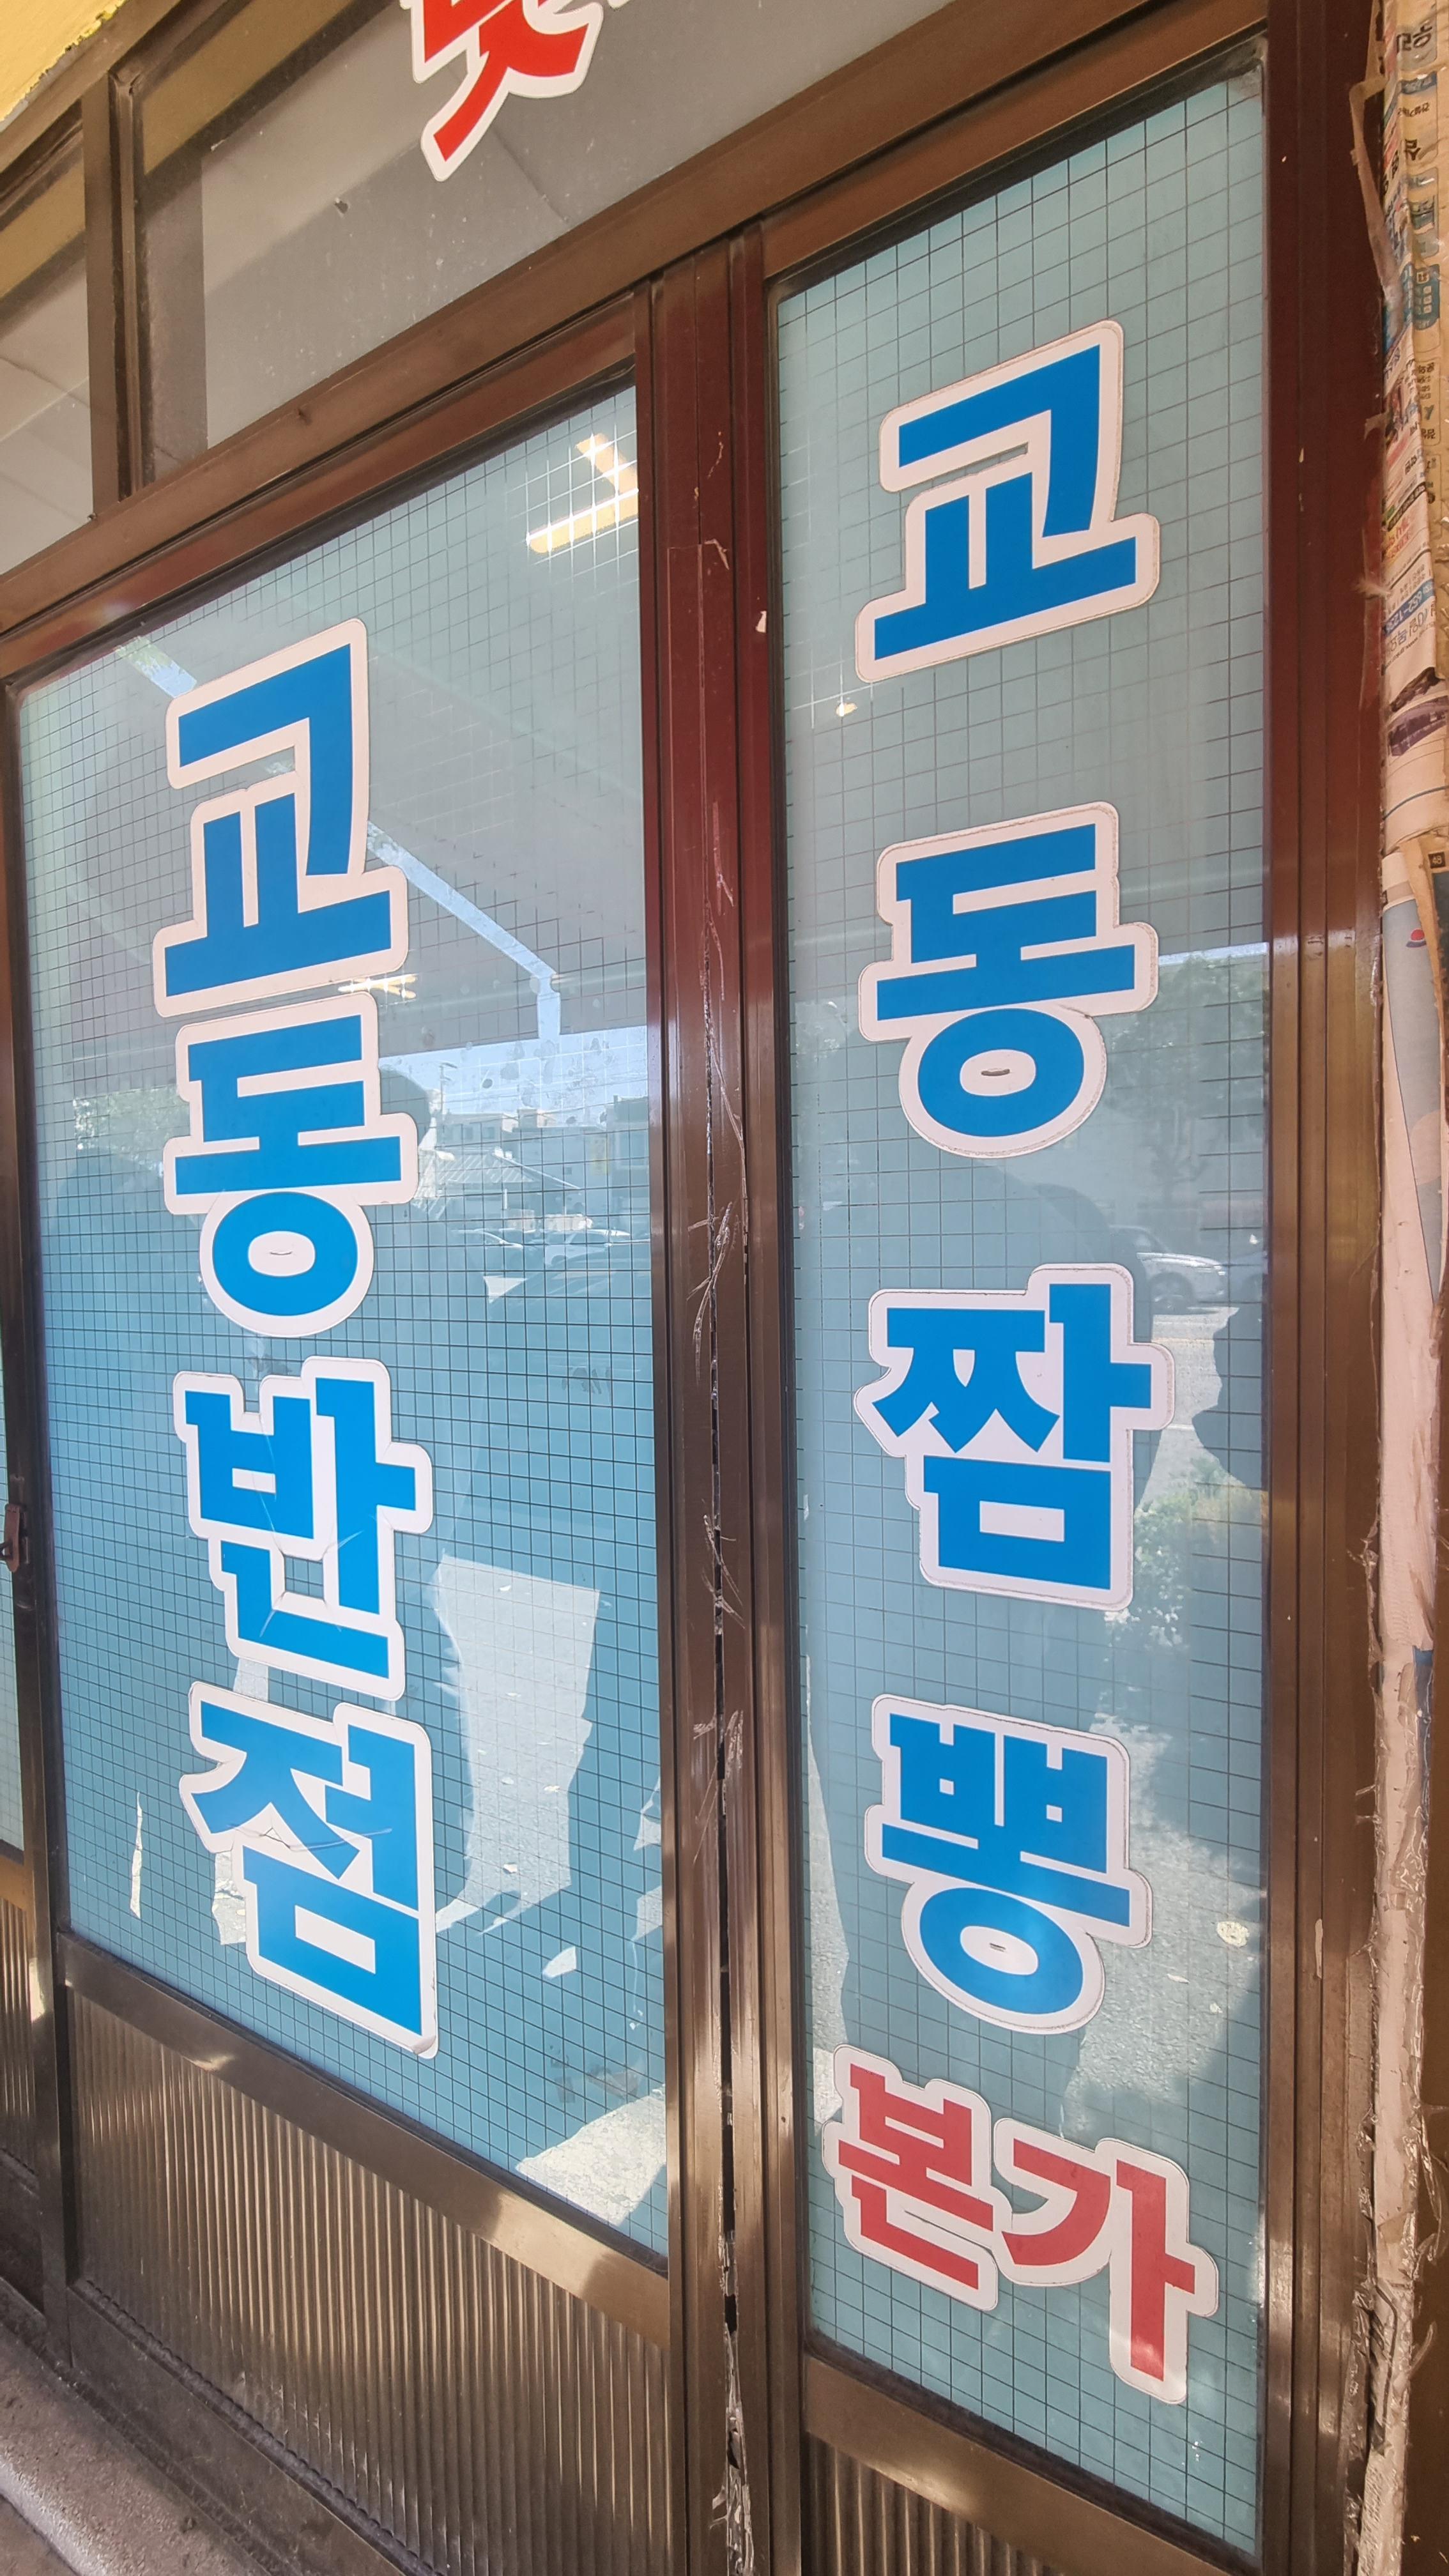 교동 짬뽕 본점 - 강릉 맛집 전국 5대 짬뽕 원조 실제 후기 사진 여행 